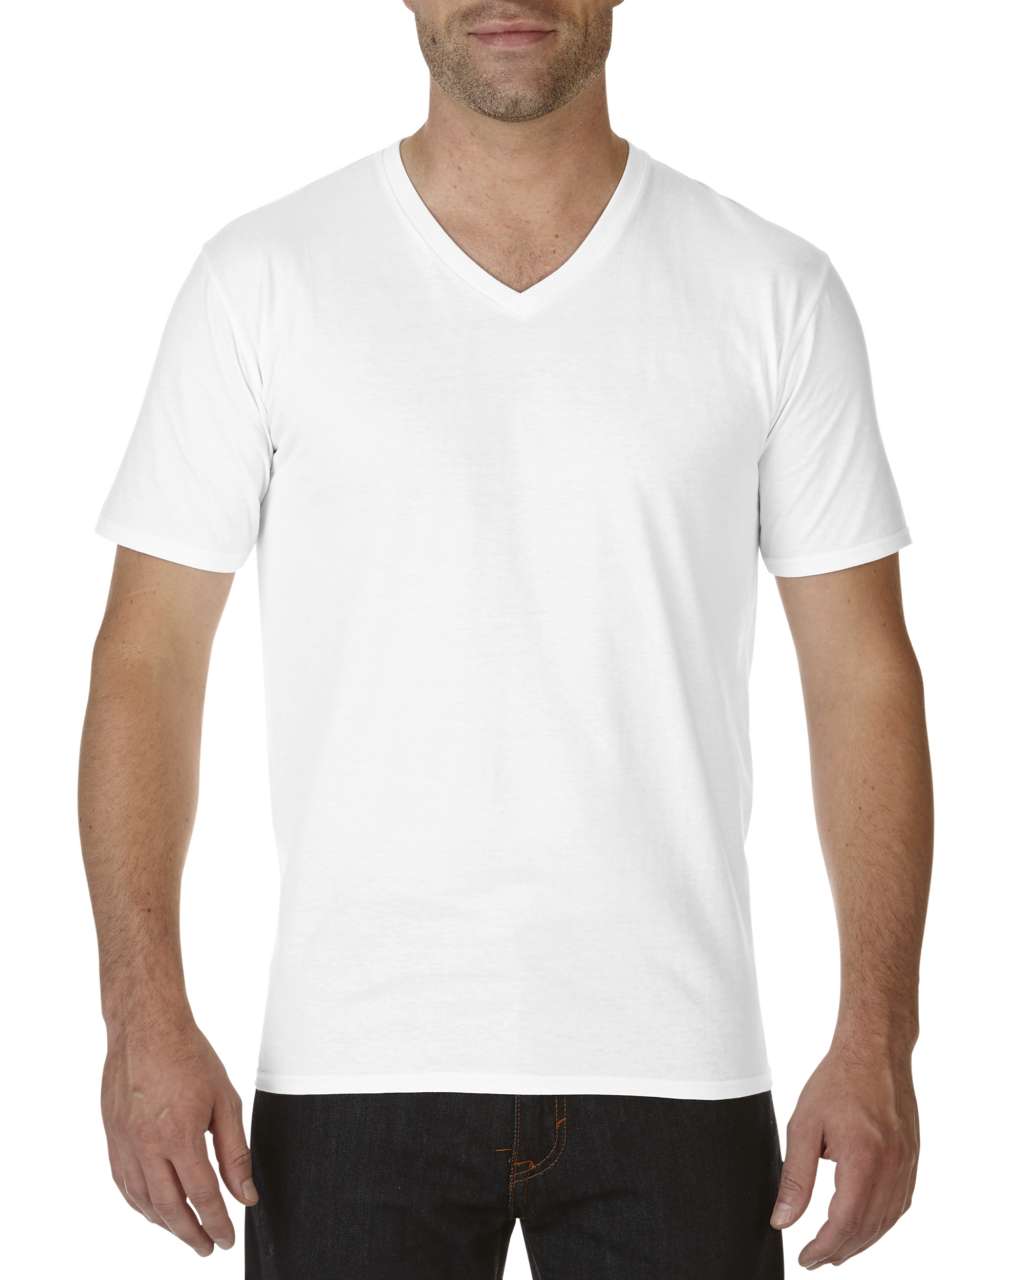 Gildan Premium Cotton® Adult V-neck T-shirt - white